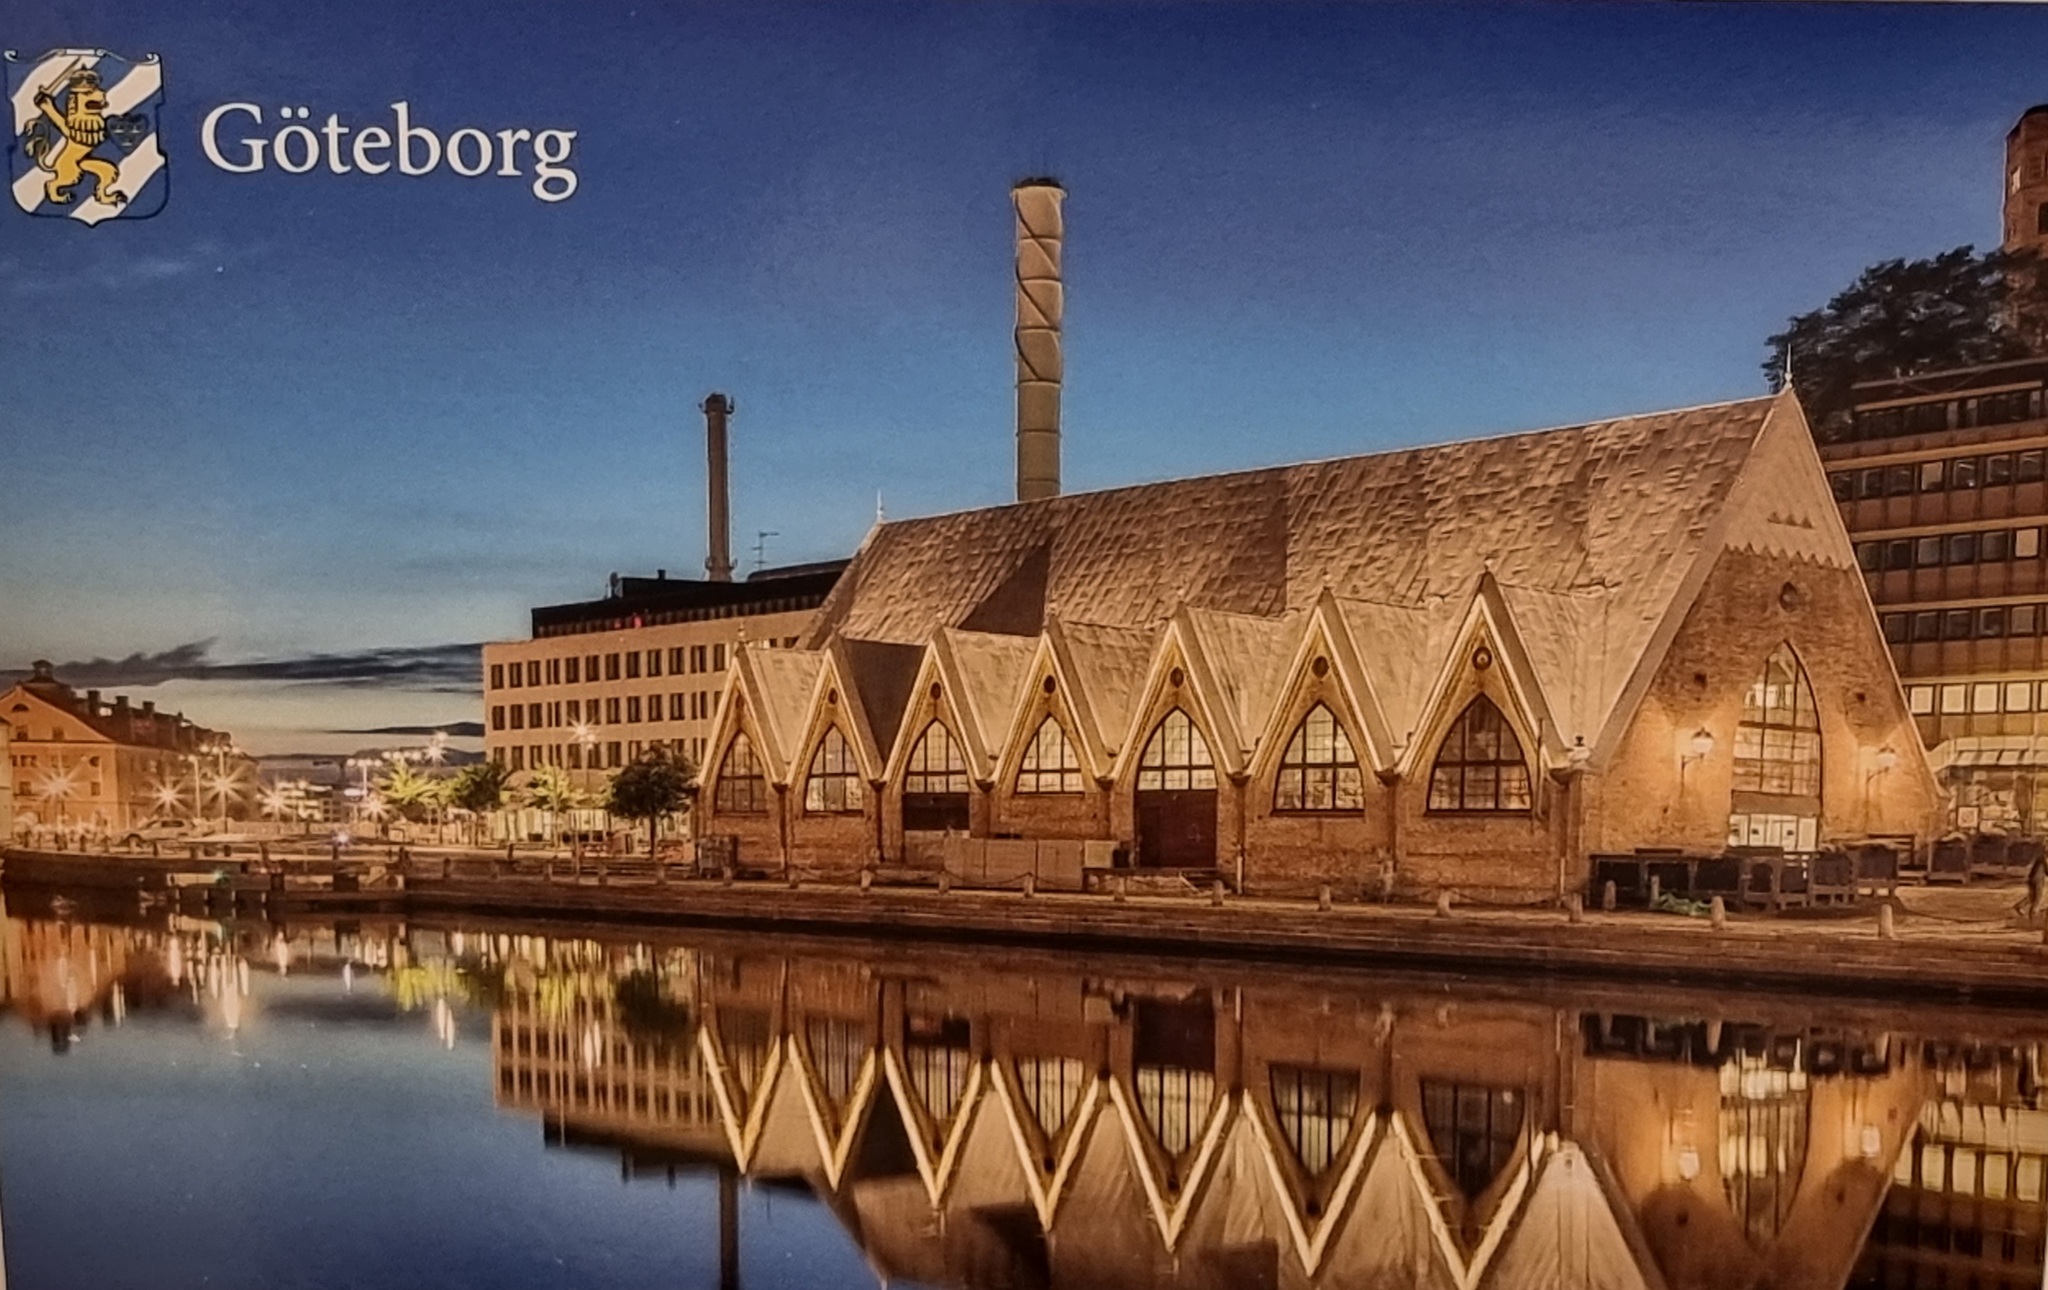 Postkarte: Göteborg Feskekörka, 170 x 115 mm